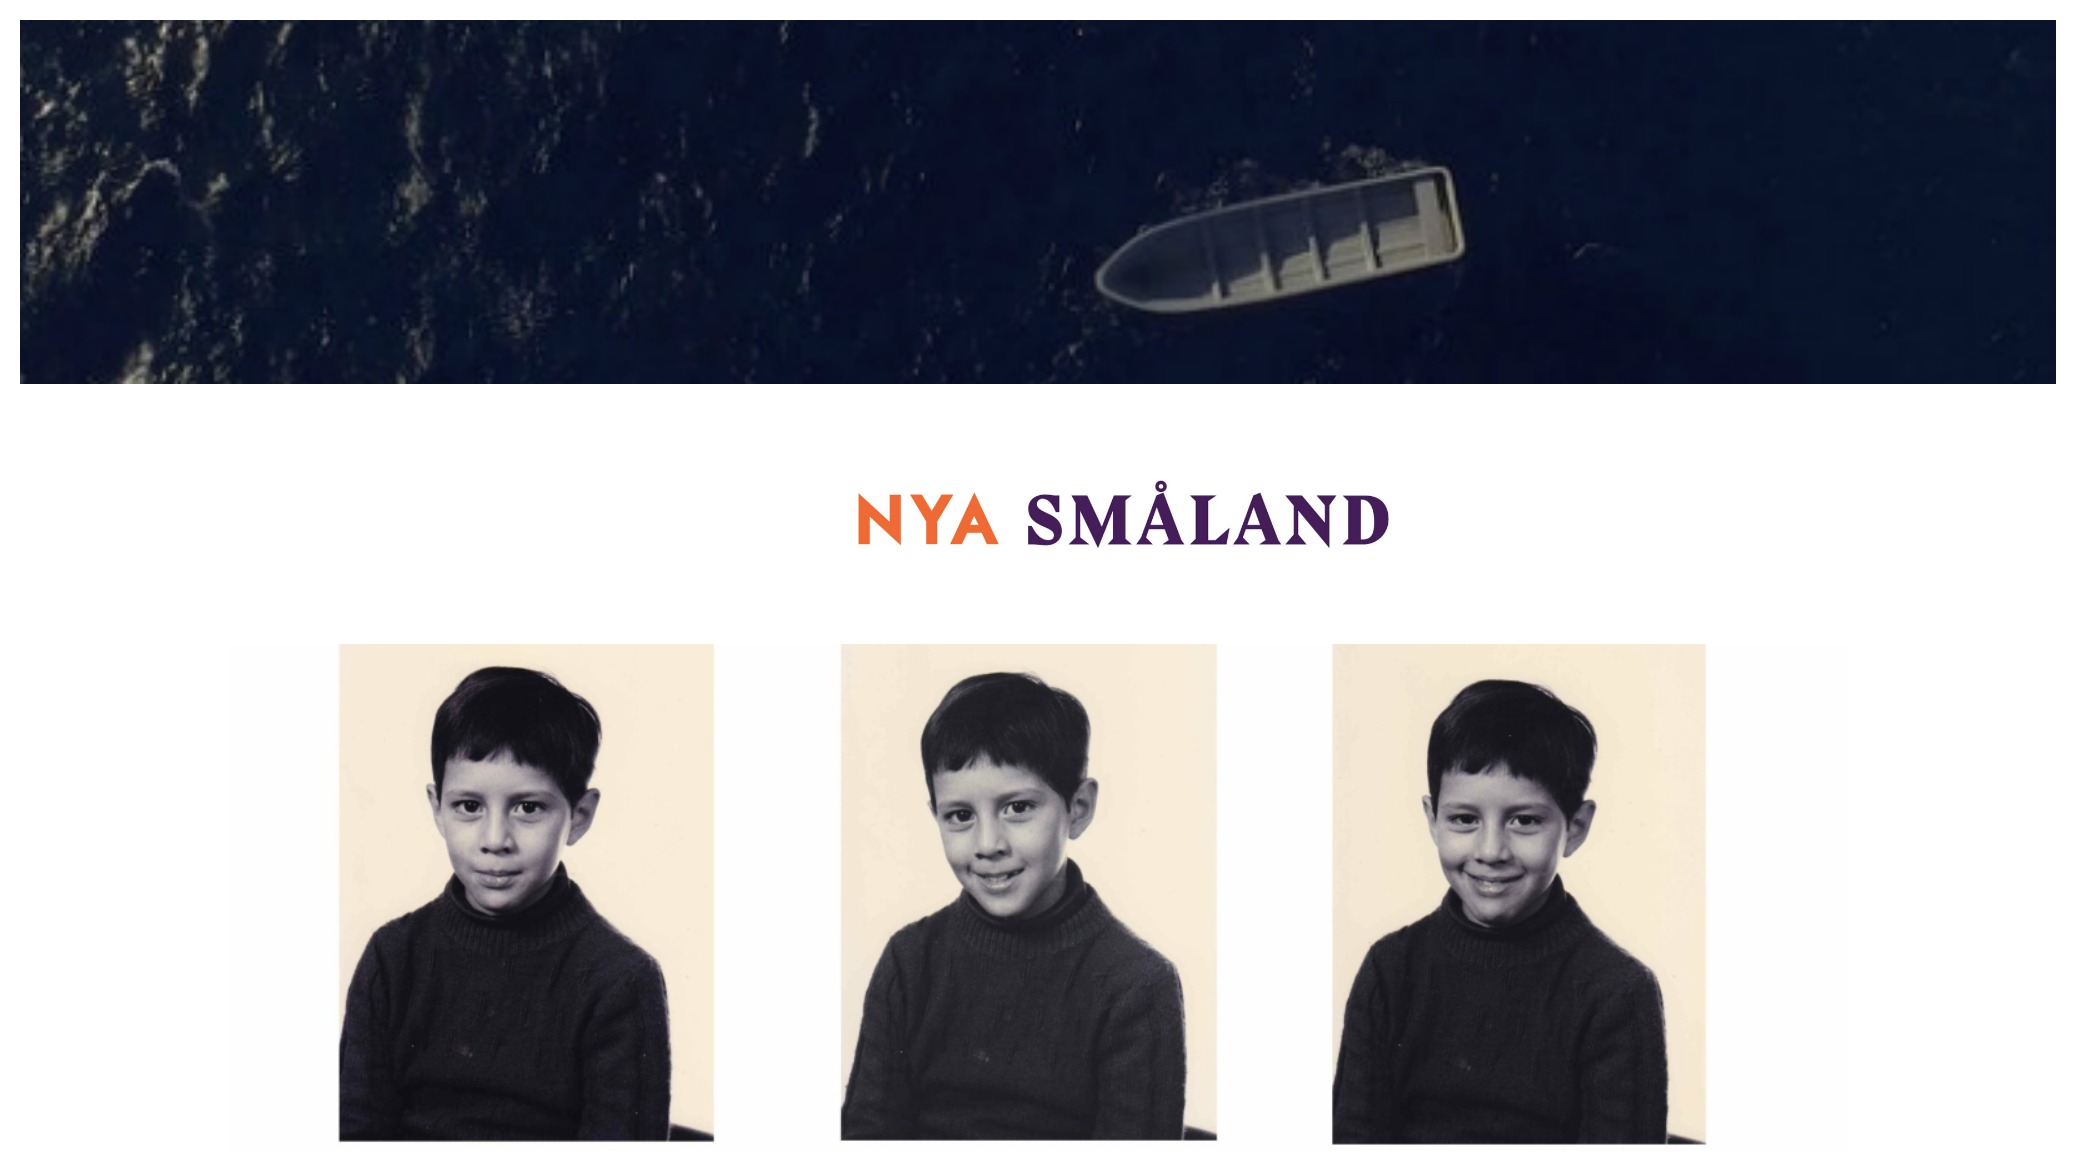 NYA Småland: Minnen av migration